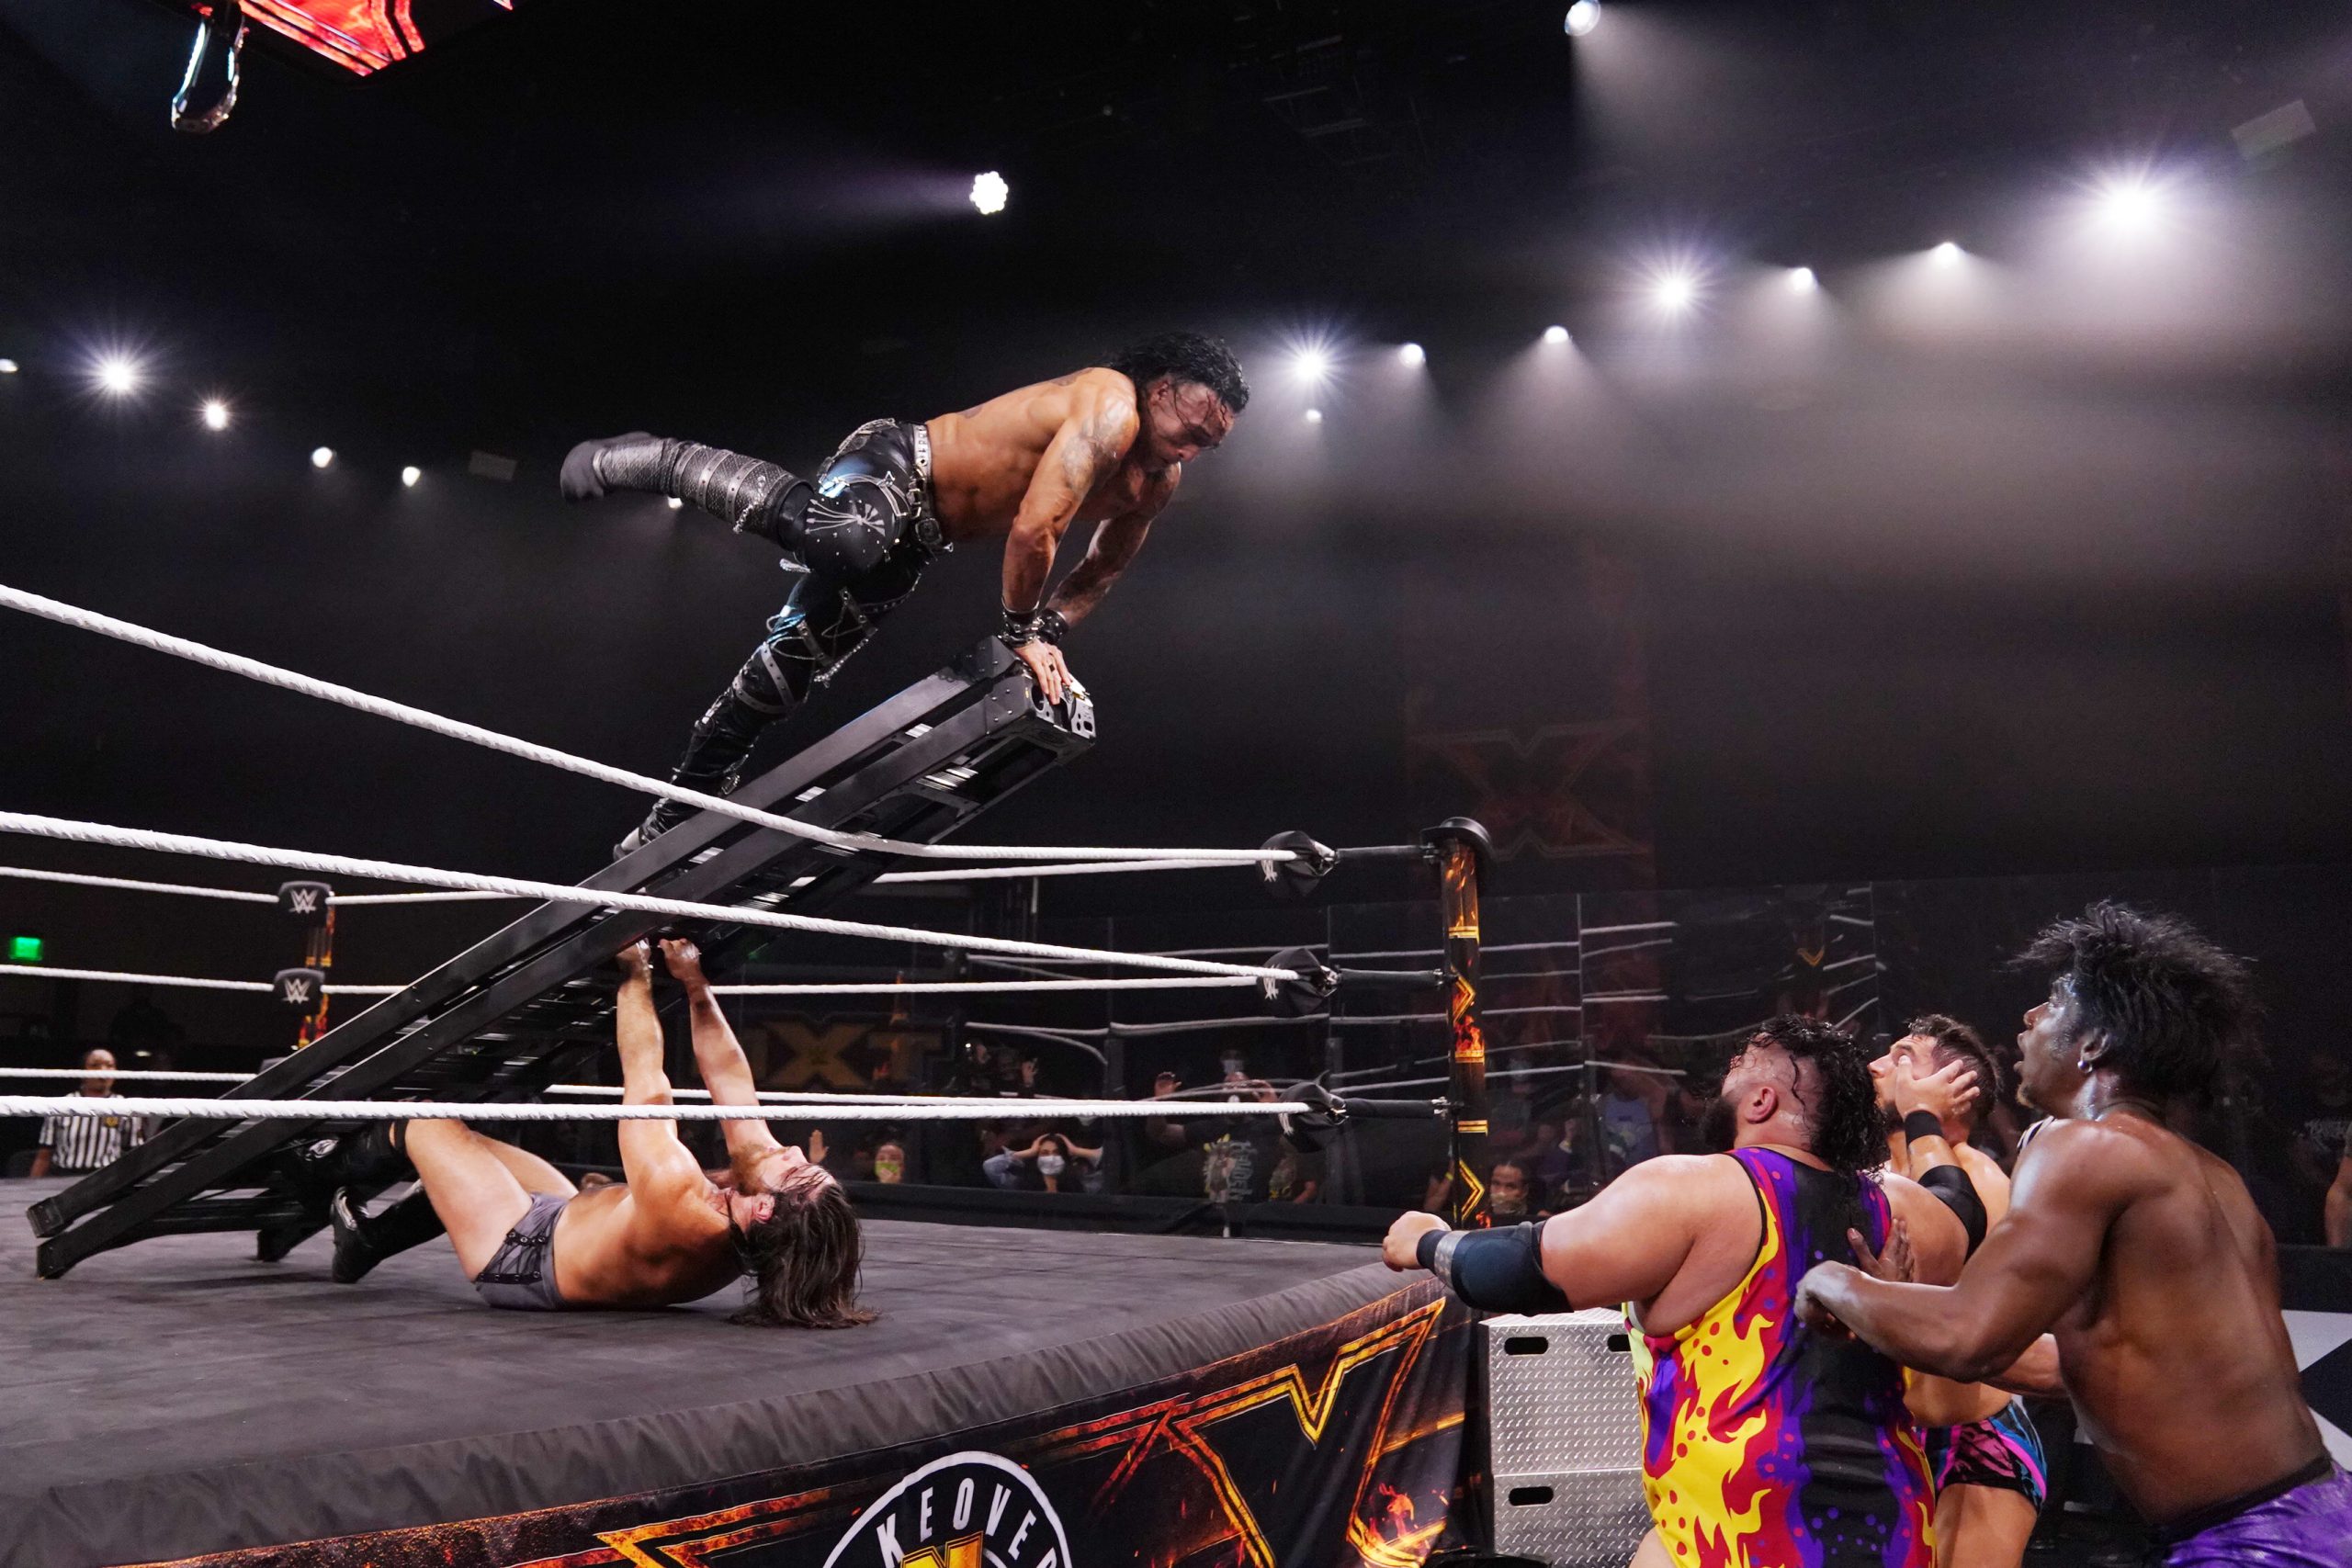 "Quiero ser recordado en el ring": El sueño y las metas de Damian Priest en la WWE